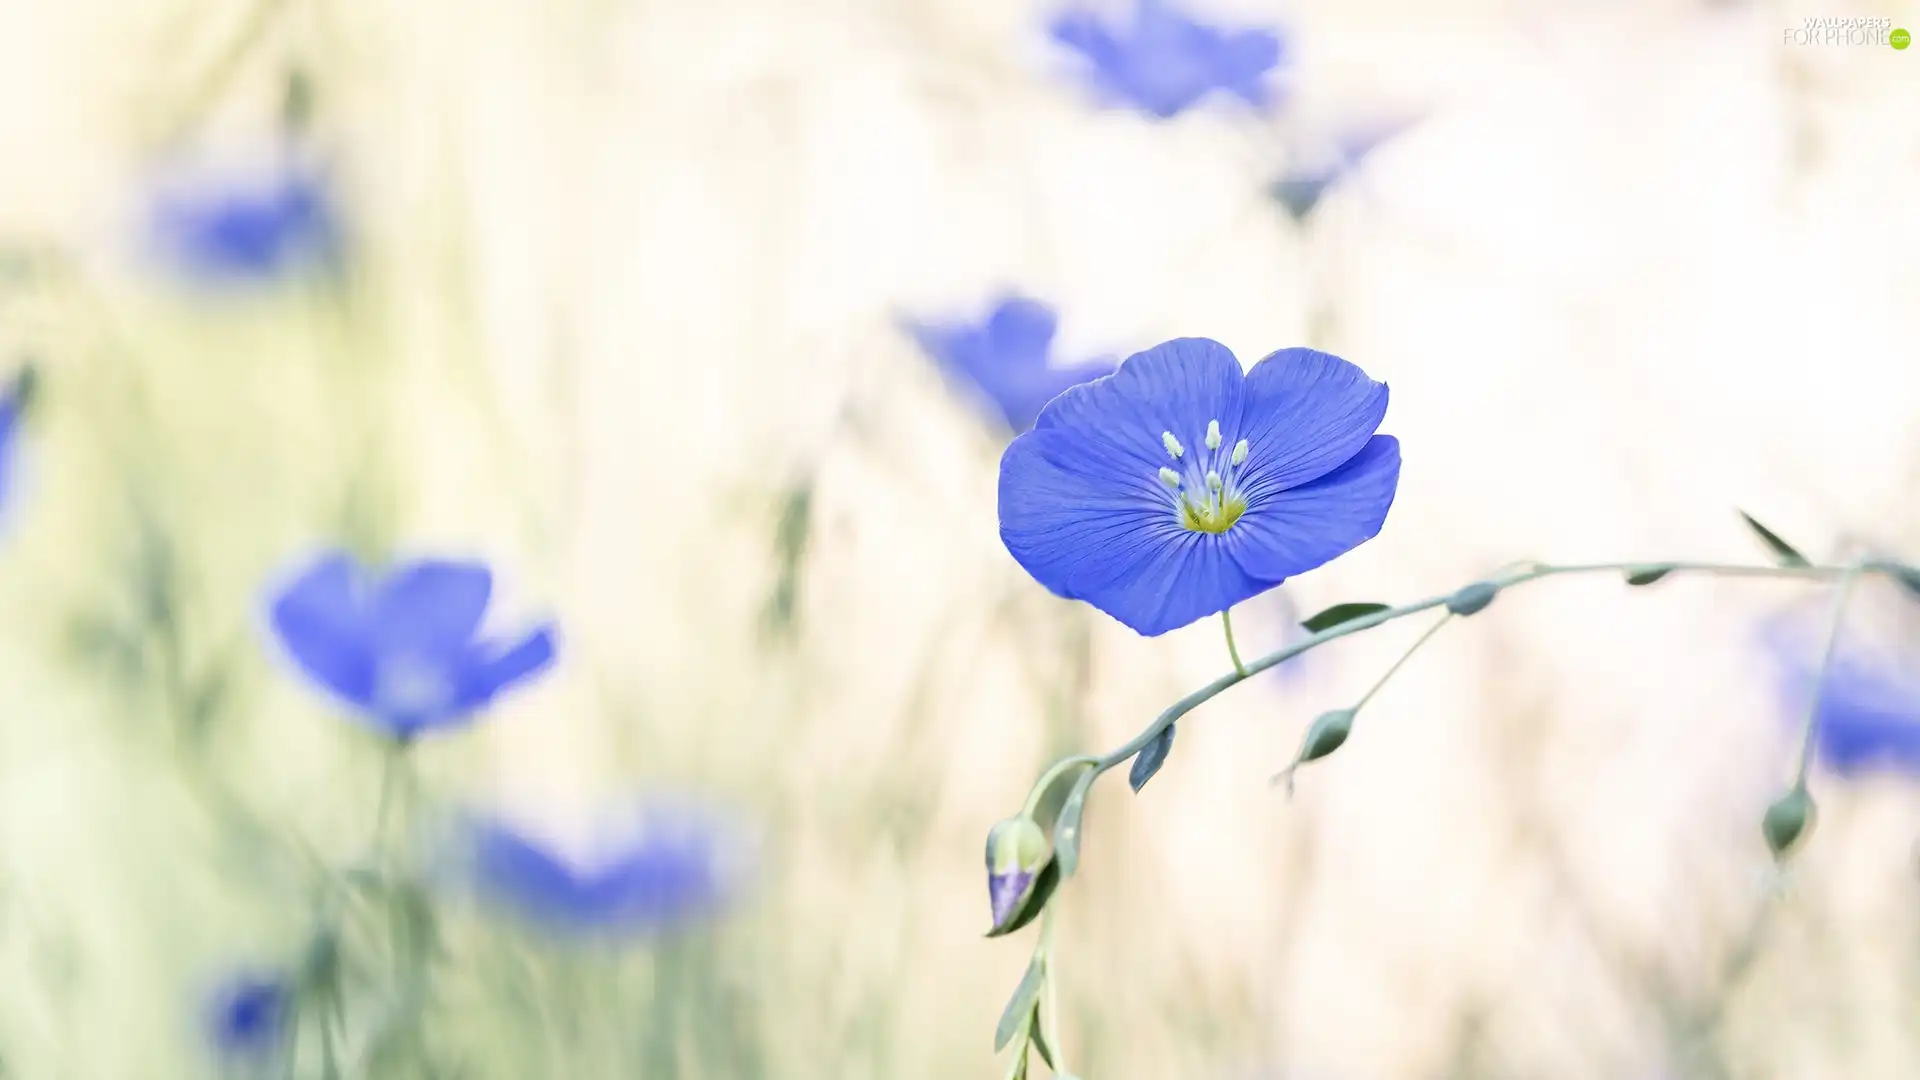 Flowers, linen, blur, Blue